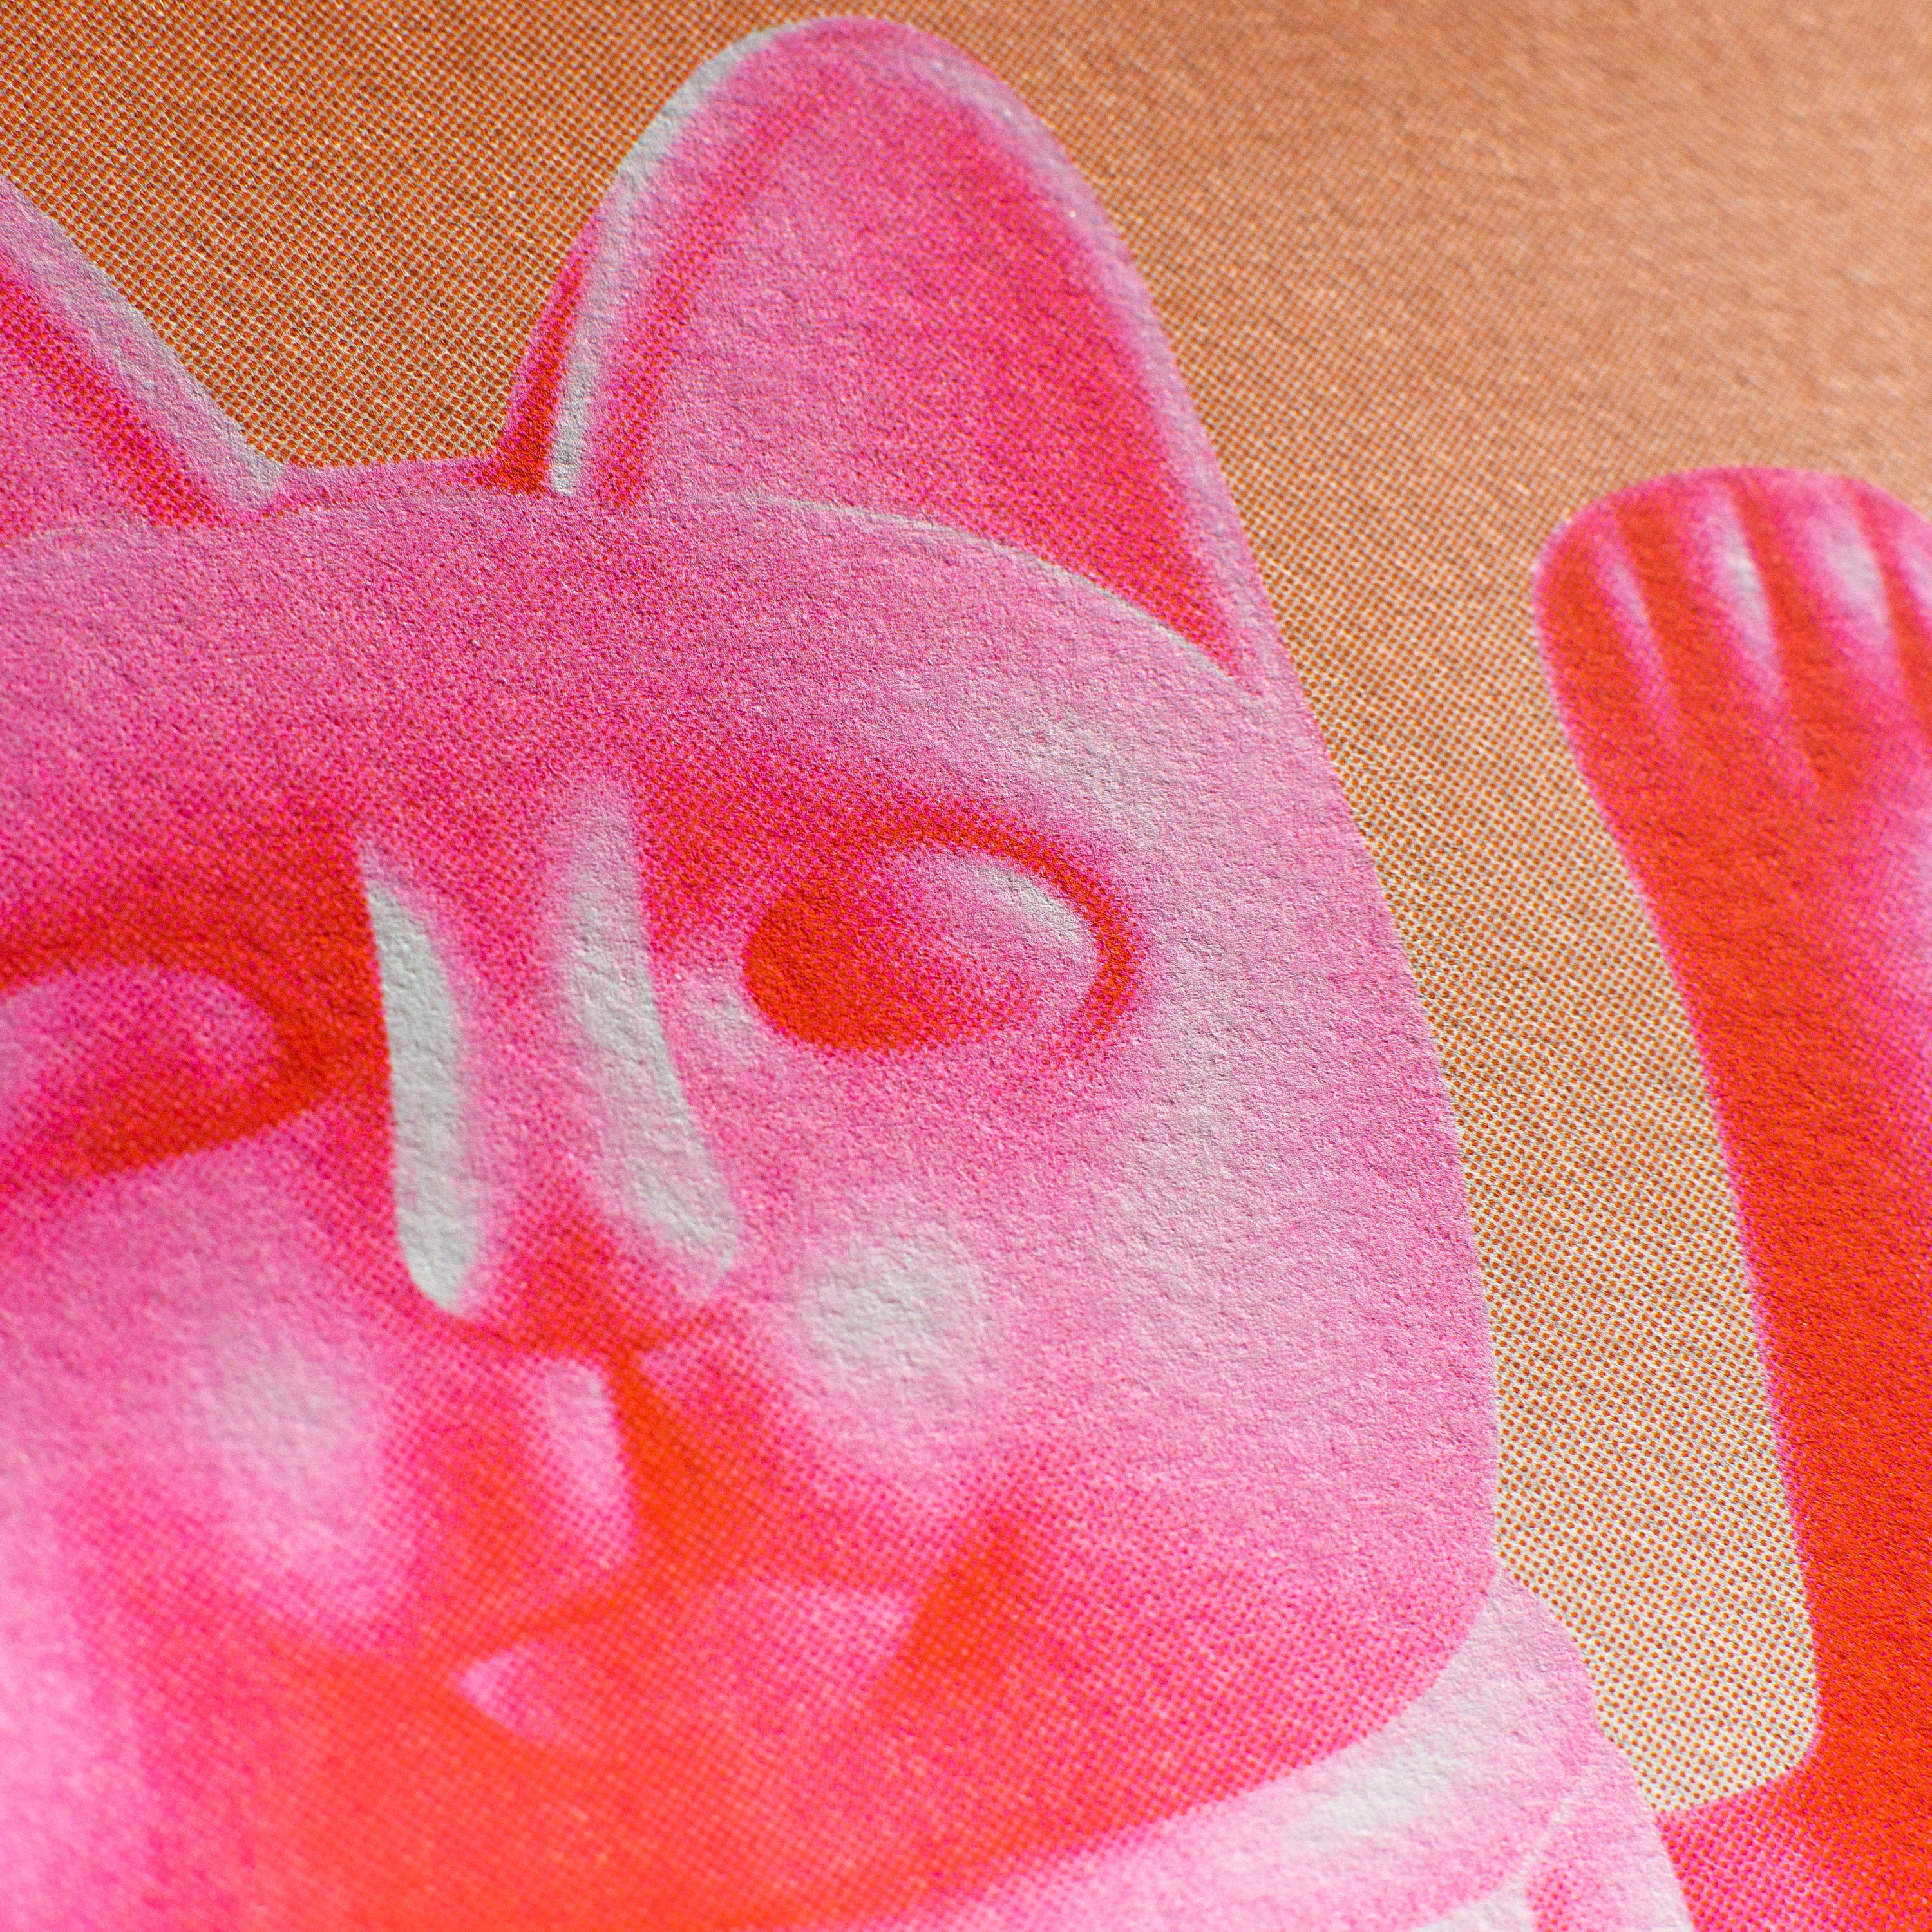 Risographie Artprint Lucky Cat Pink